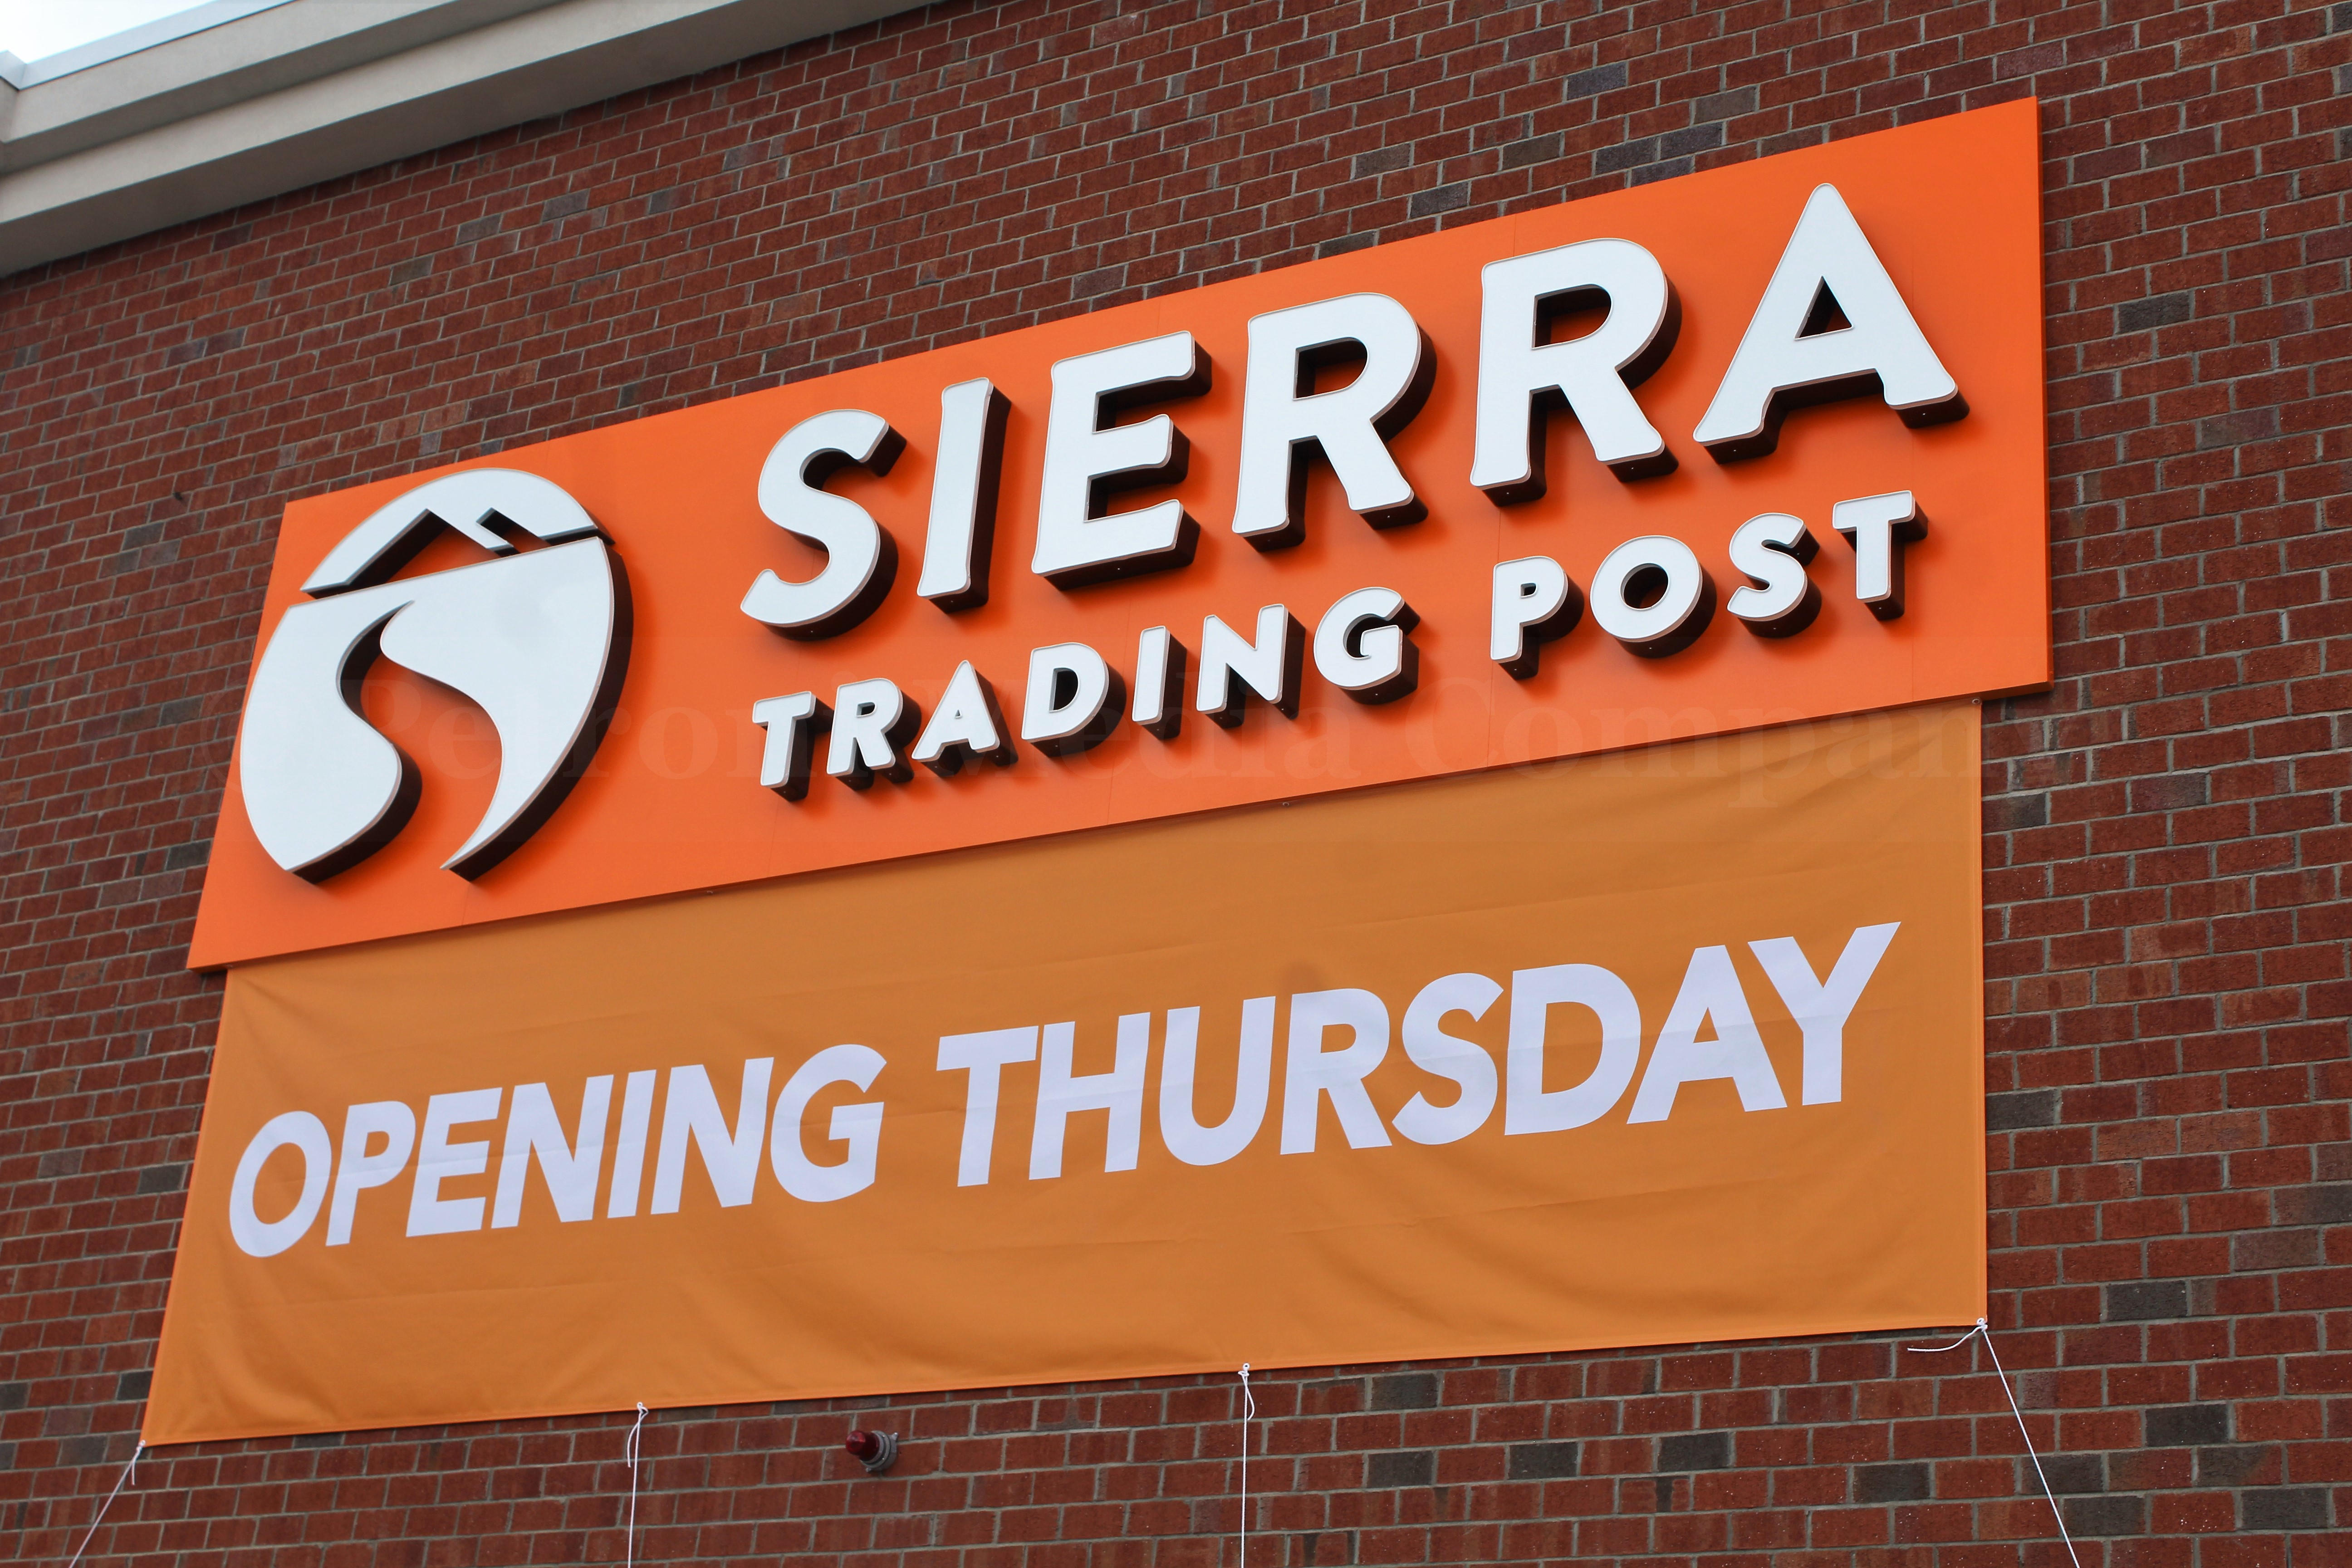 SLIDESHOW First Massachusetts Sierra Trading Post Opens in Framingham